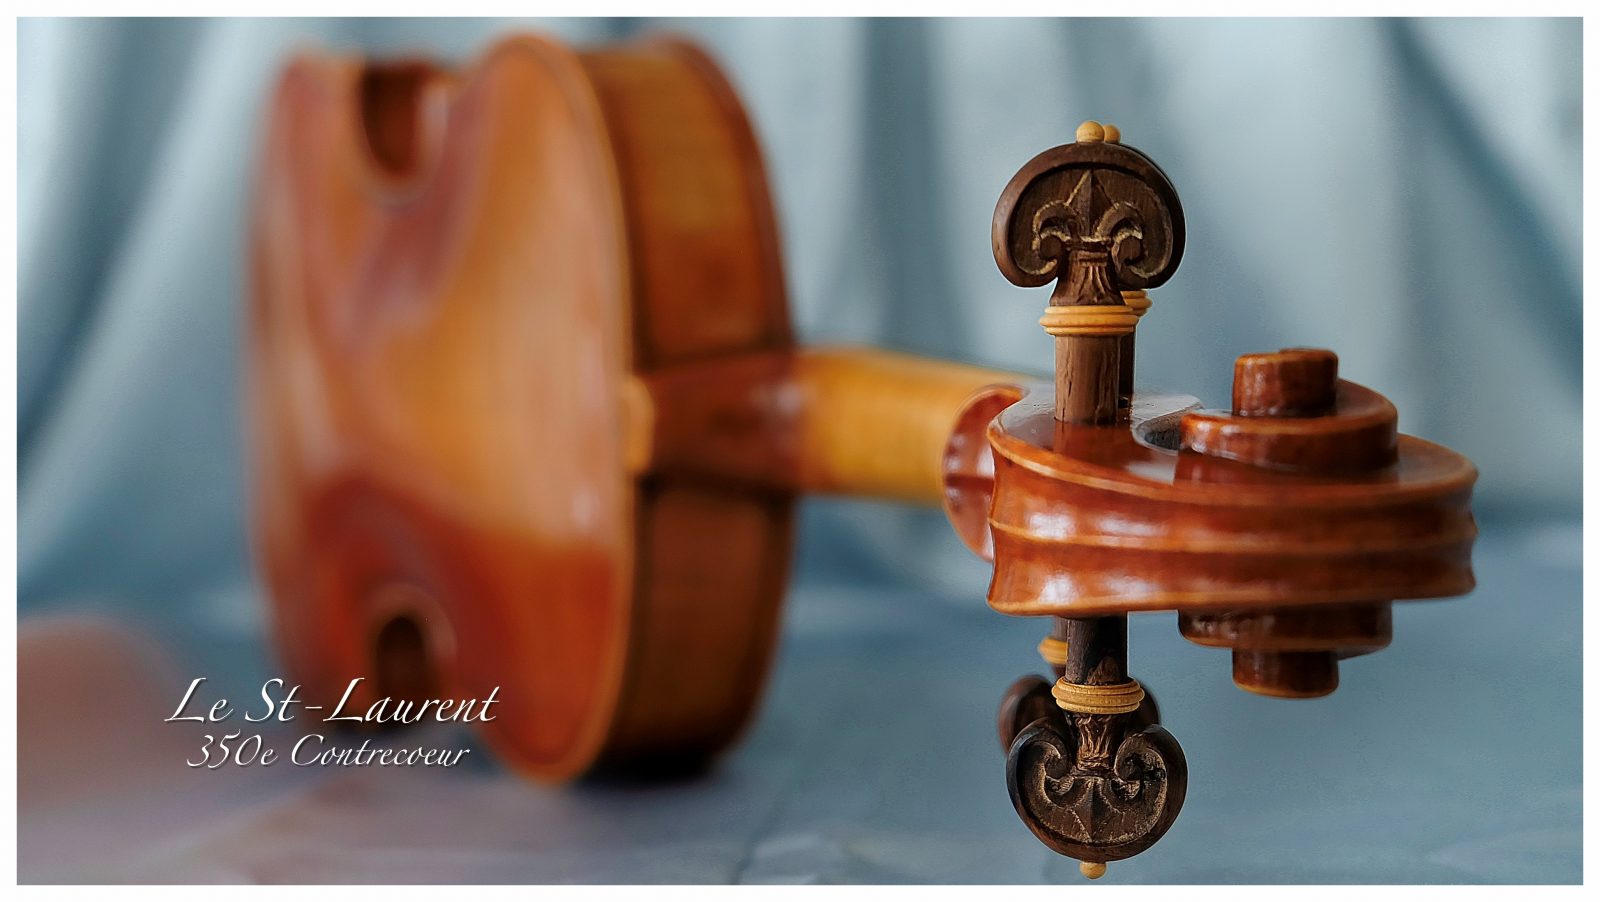 Un violon dédié au fleuve Saint-Laurent et au 350e de Contrecœur fait à la main par un luthier de la région